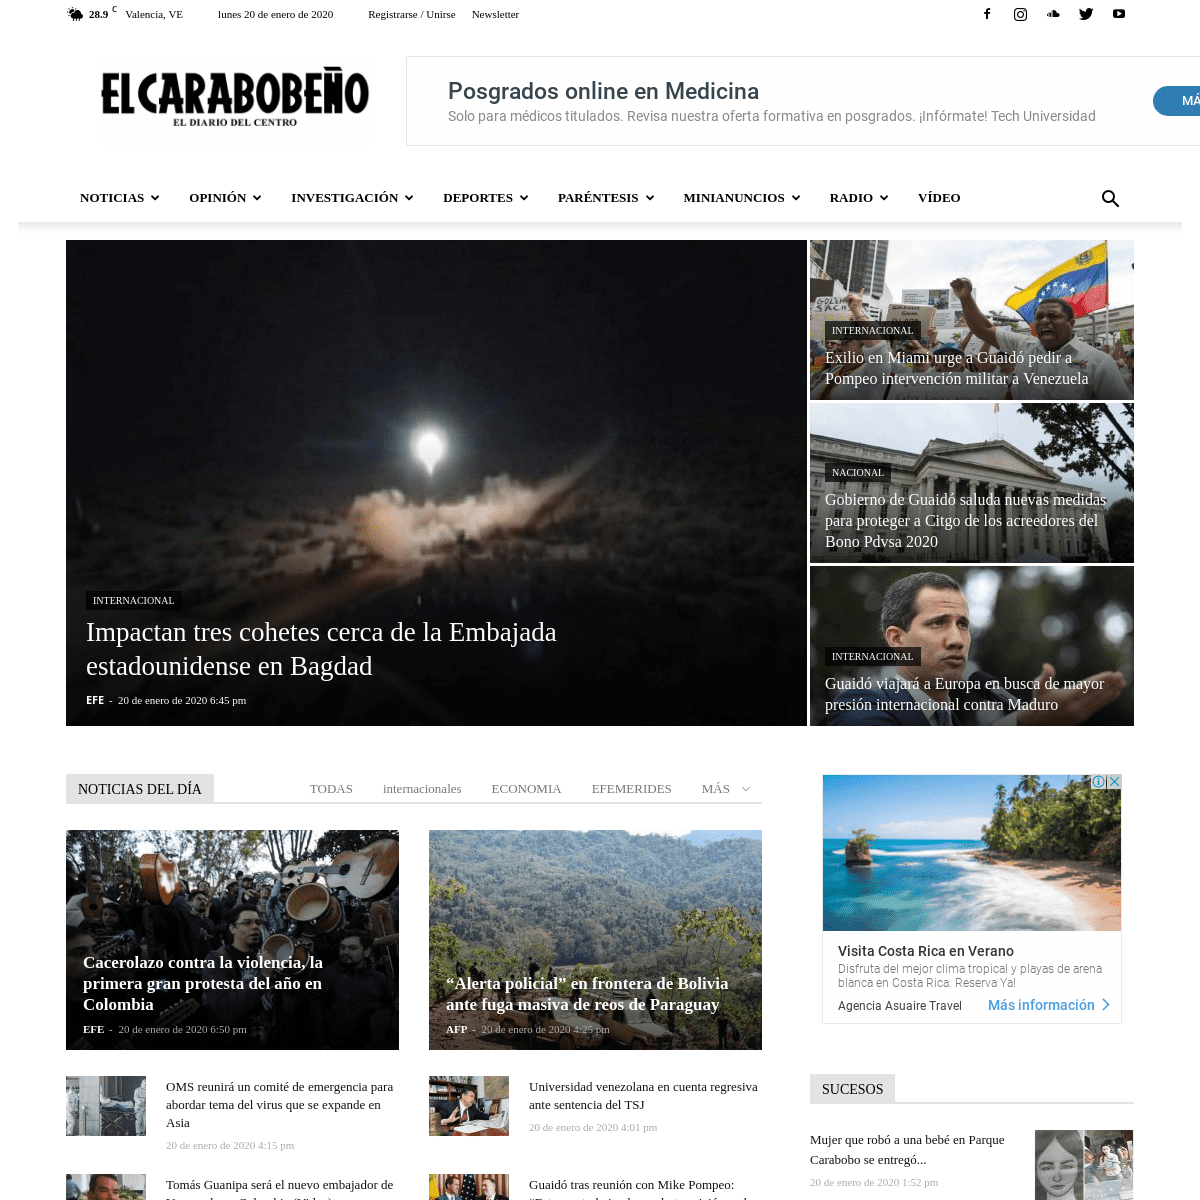 A complete backup of el-carabobeno.com